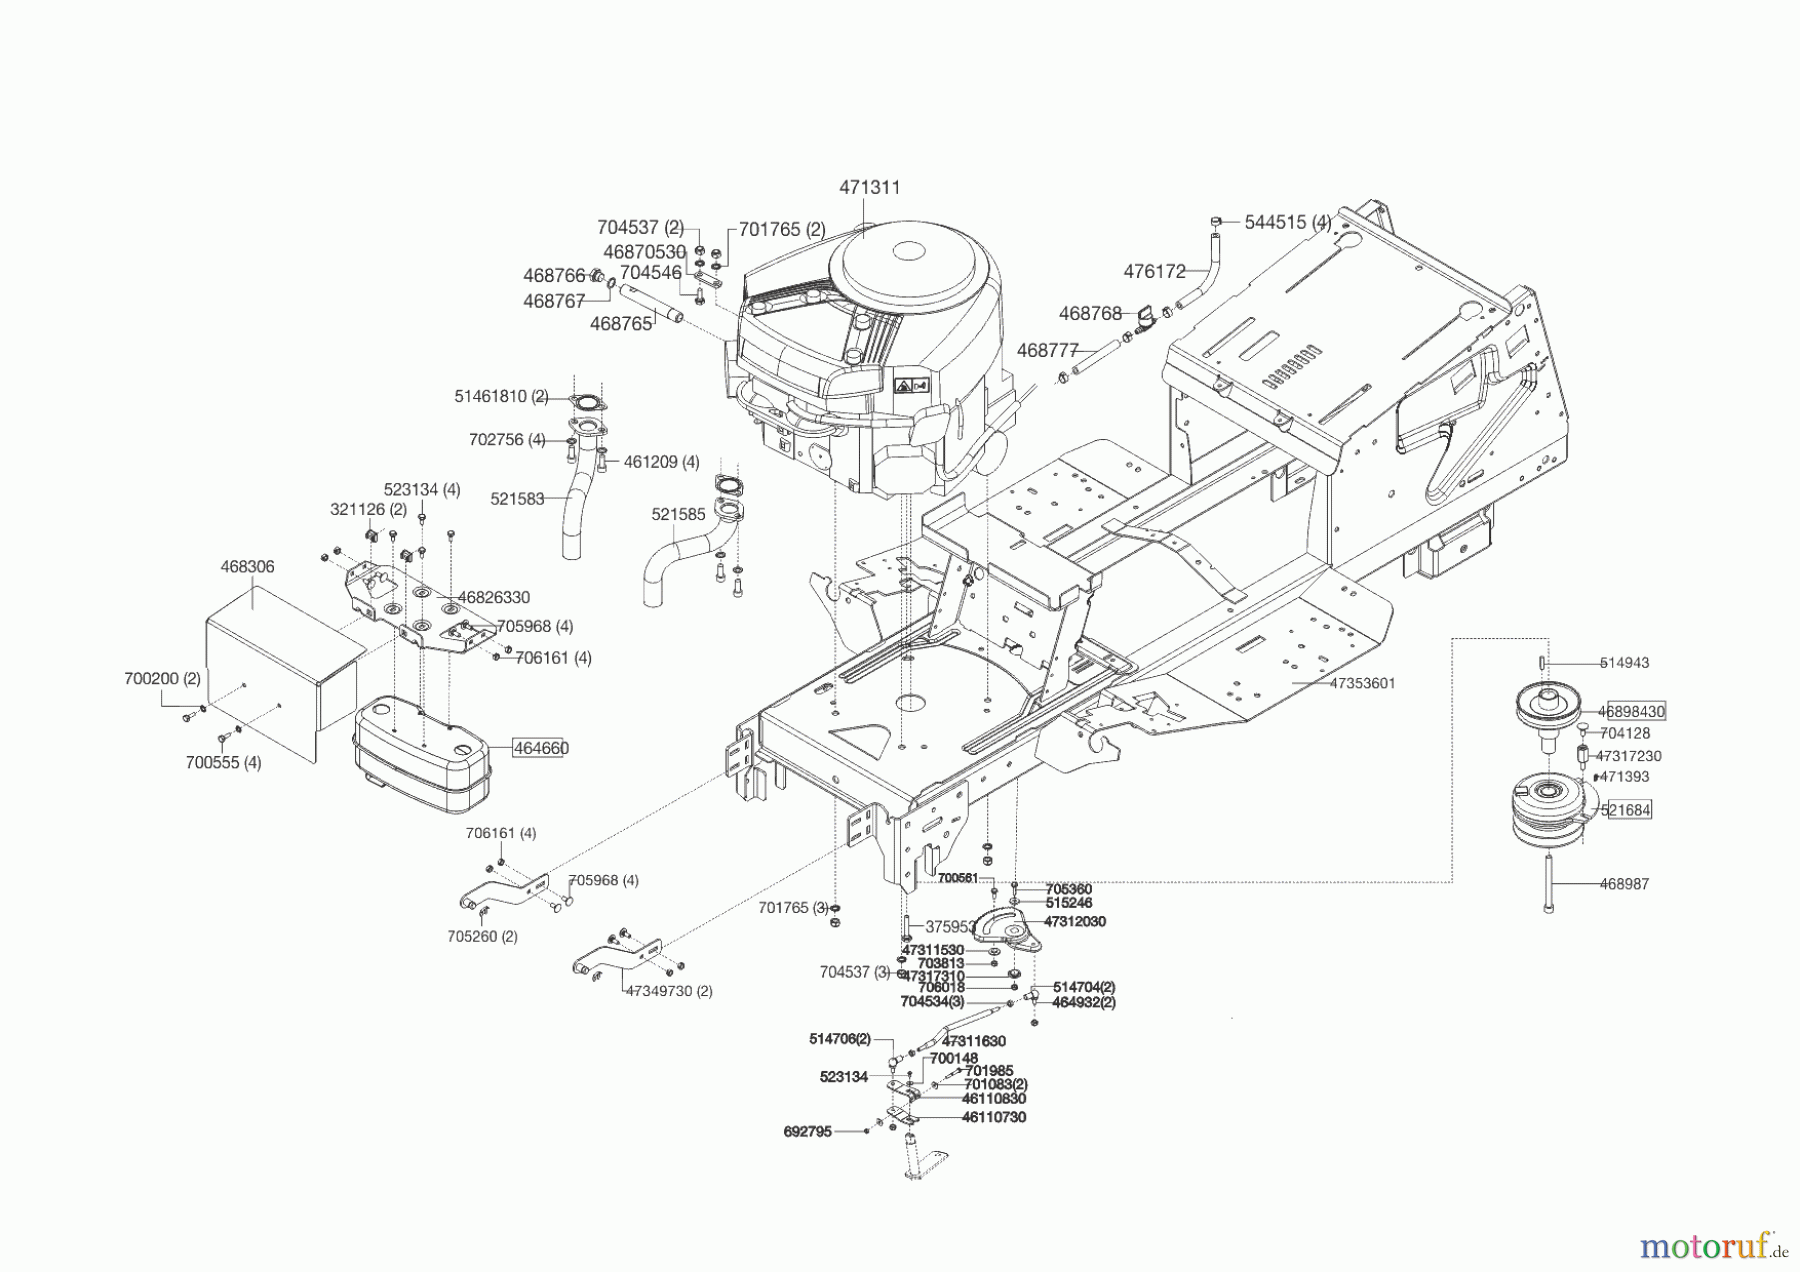  Powerline Gartentechnik Rasentraktor T 16-95.4 HD V2  ab 09/2016 Seite 2